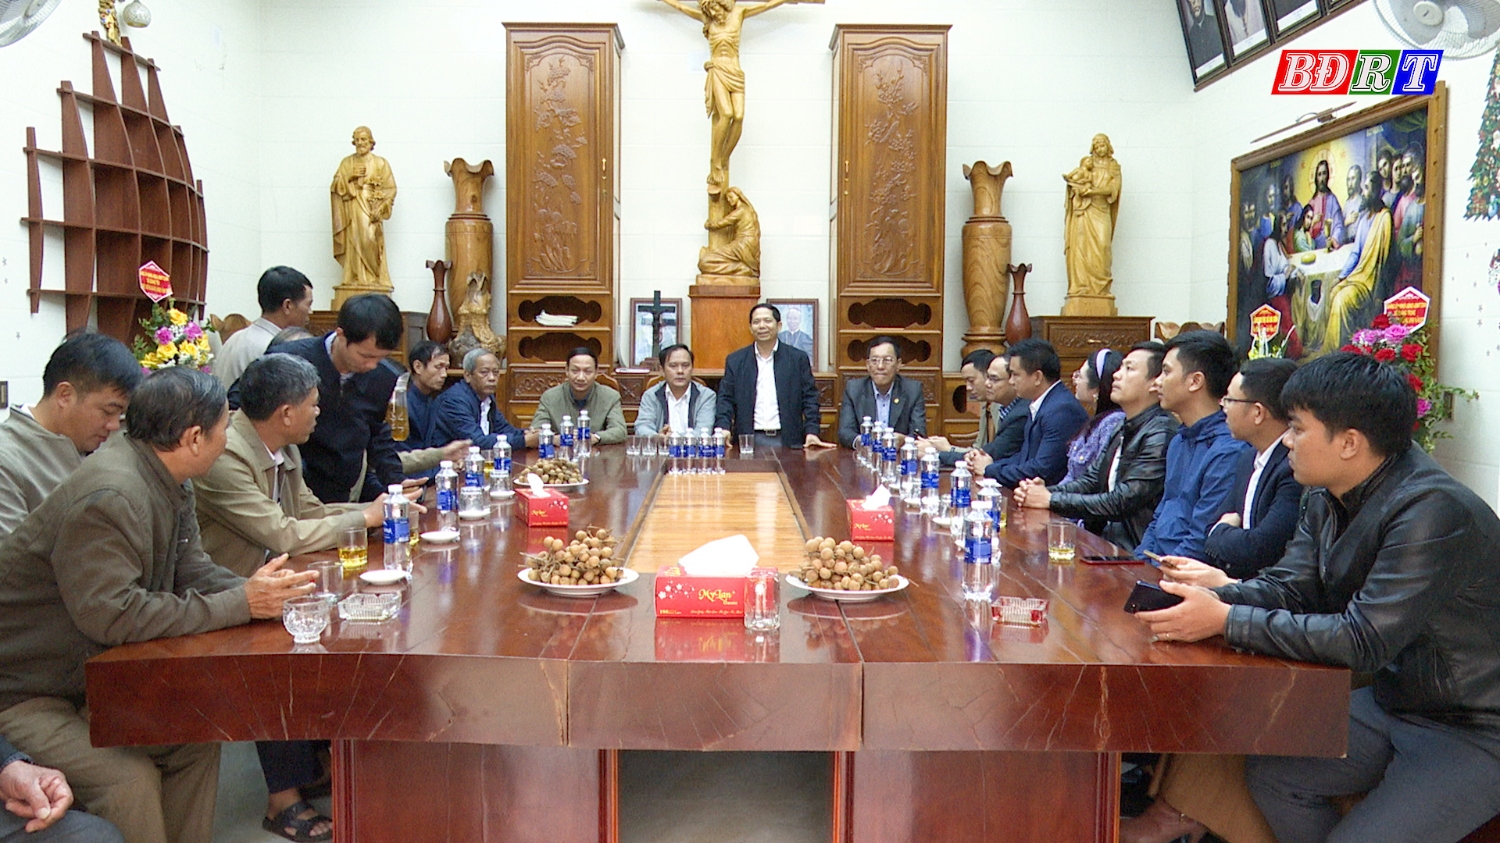 Đồng chí Nguyễn Văn Ninh, Phó Chủ tịch UBND thị xã thăm, tặng quà giáo xứ Liên Hòa, xã Quảng Trung